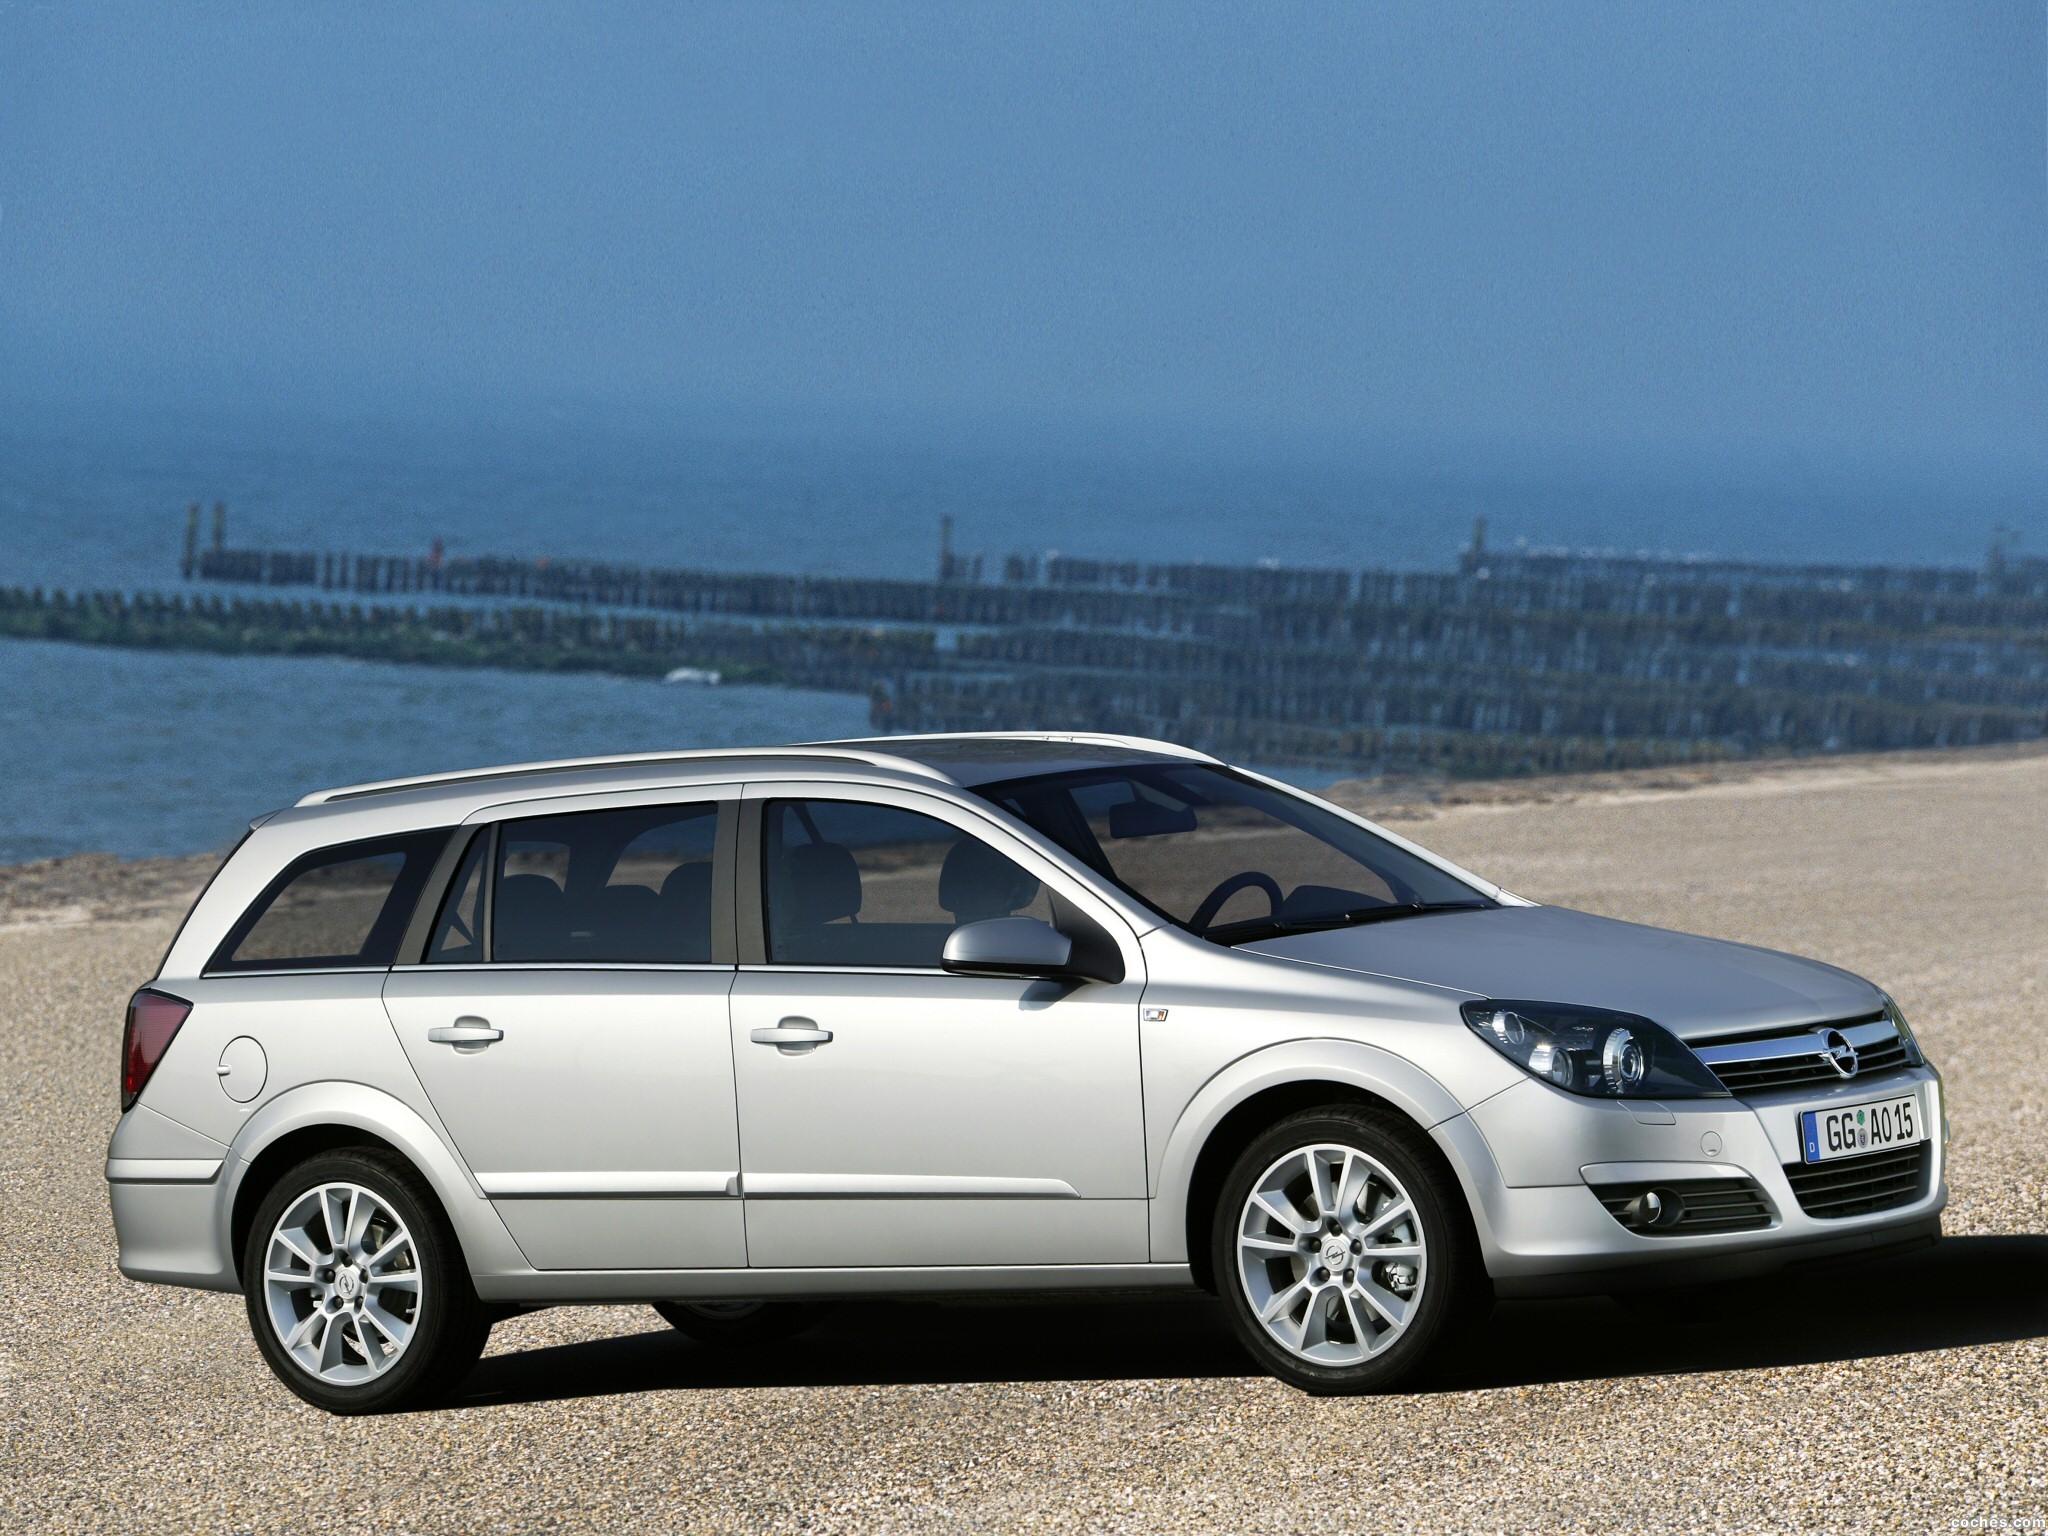 Универсал 1 7. Opel Astra 2004 универсал. Opel Astra h Wagon 2004. Opel Astra h универсал 2004. Opel Astra Station Wagon.